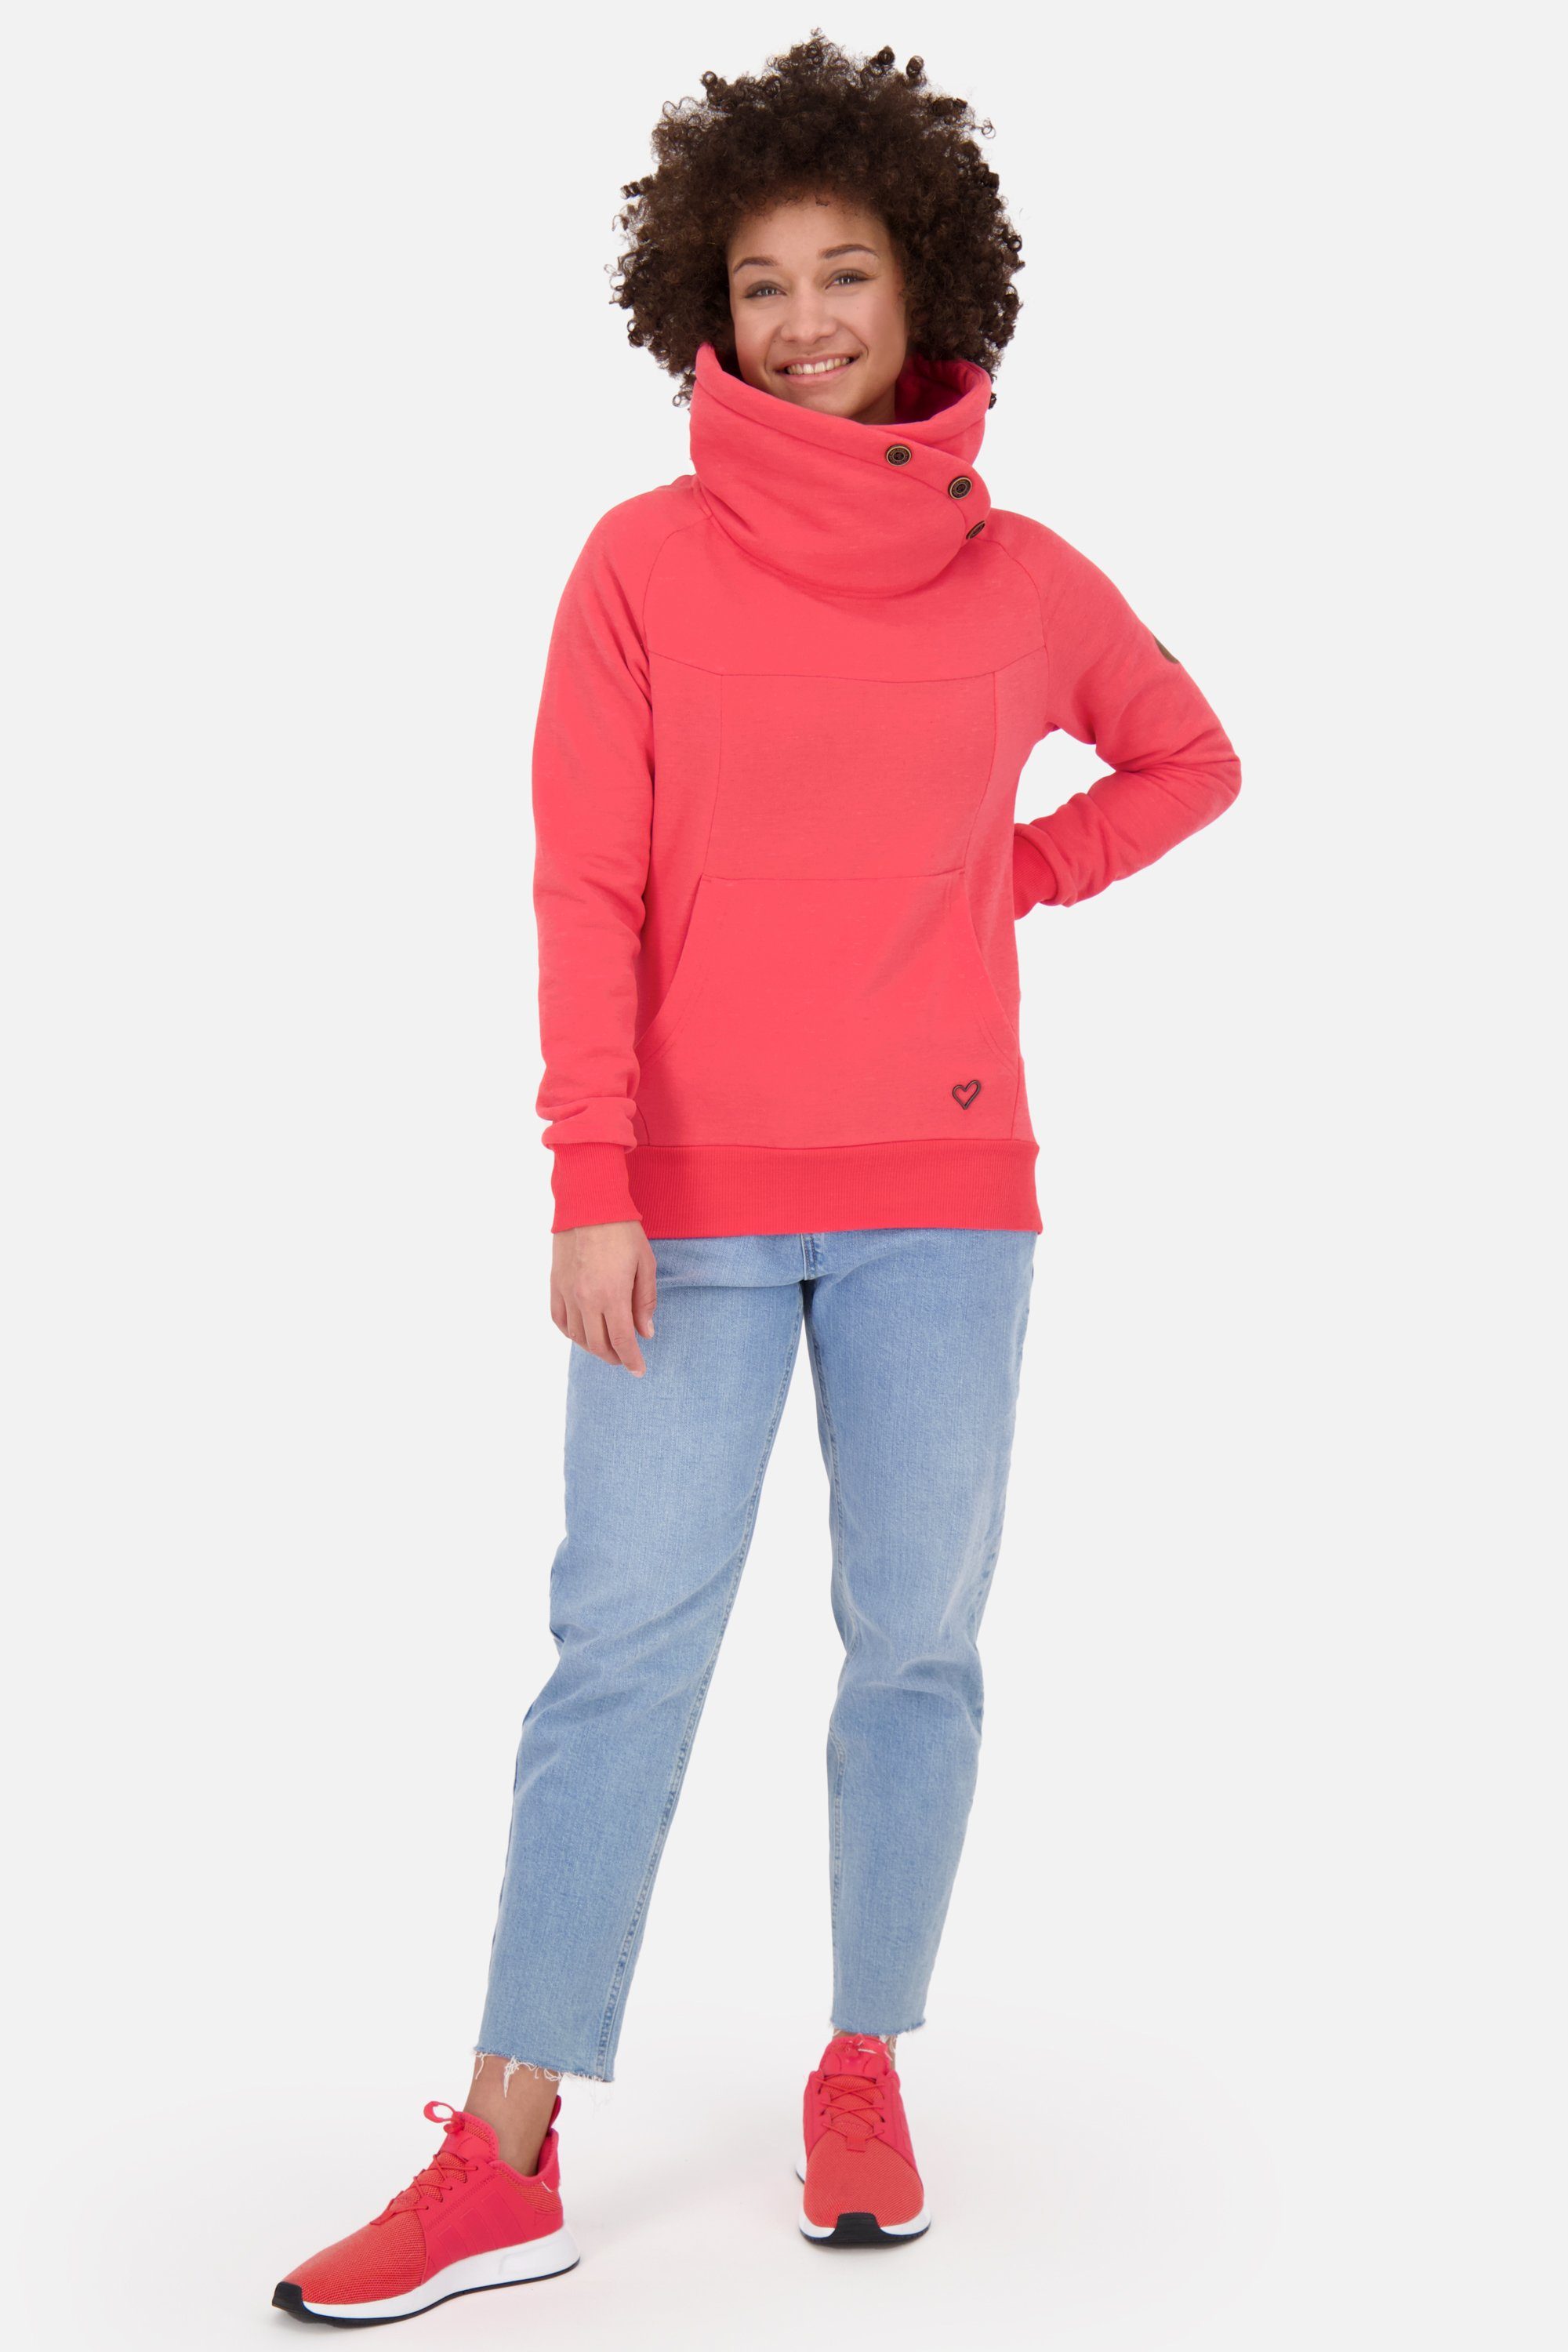 Alife & Kickin Sweatshirt VioletAK coral Rundhalspullover, Pullover A Damen Sweatshirt melange